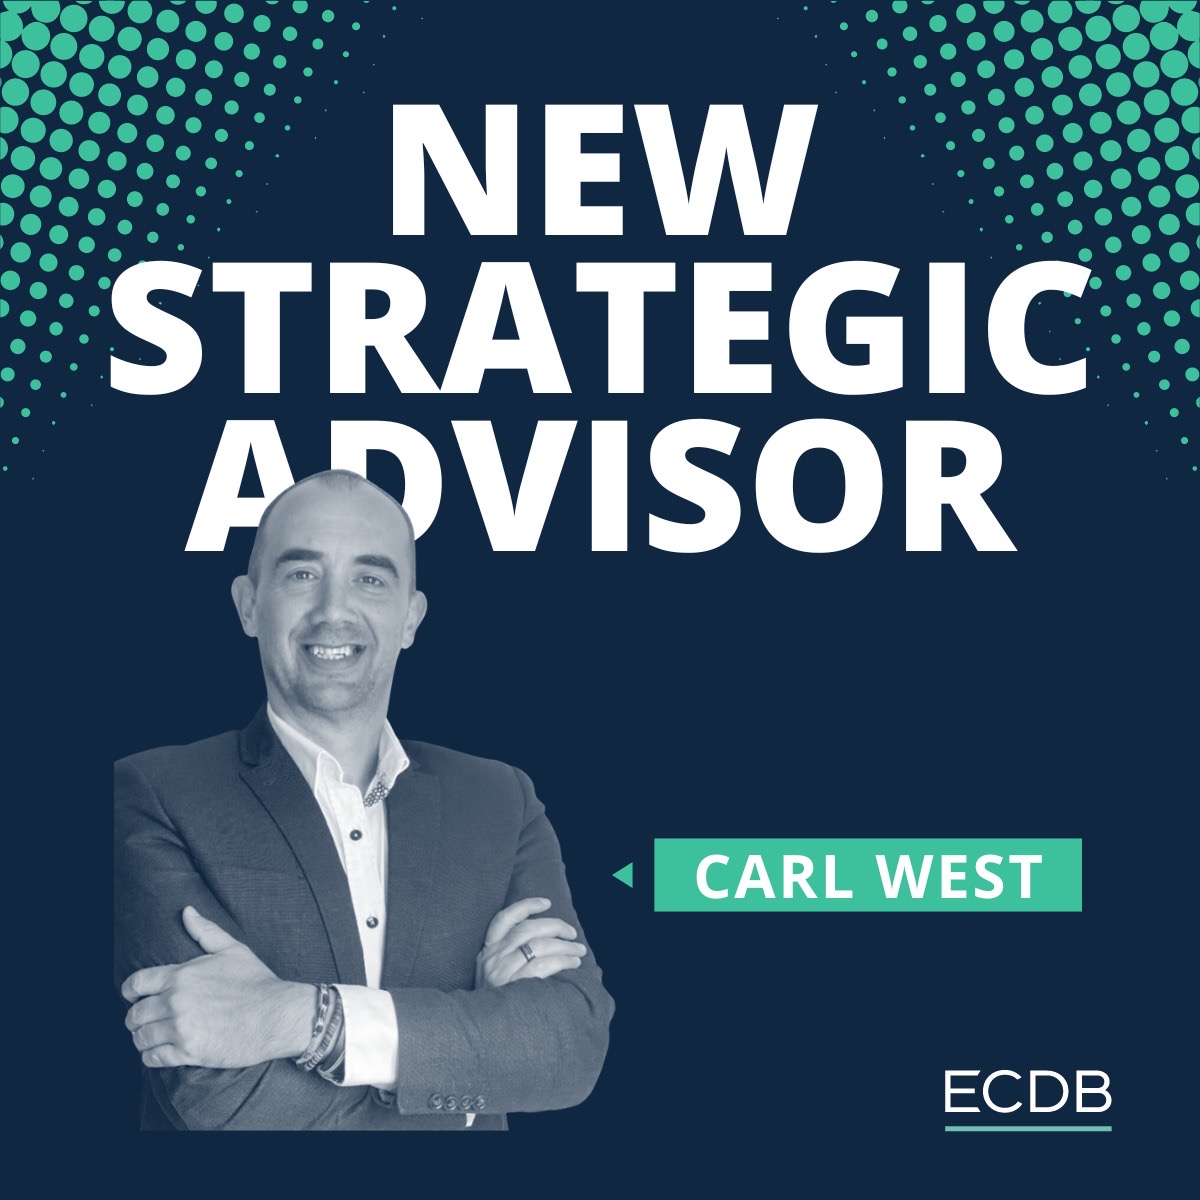 ECBD-Consultant-Carl-West